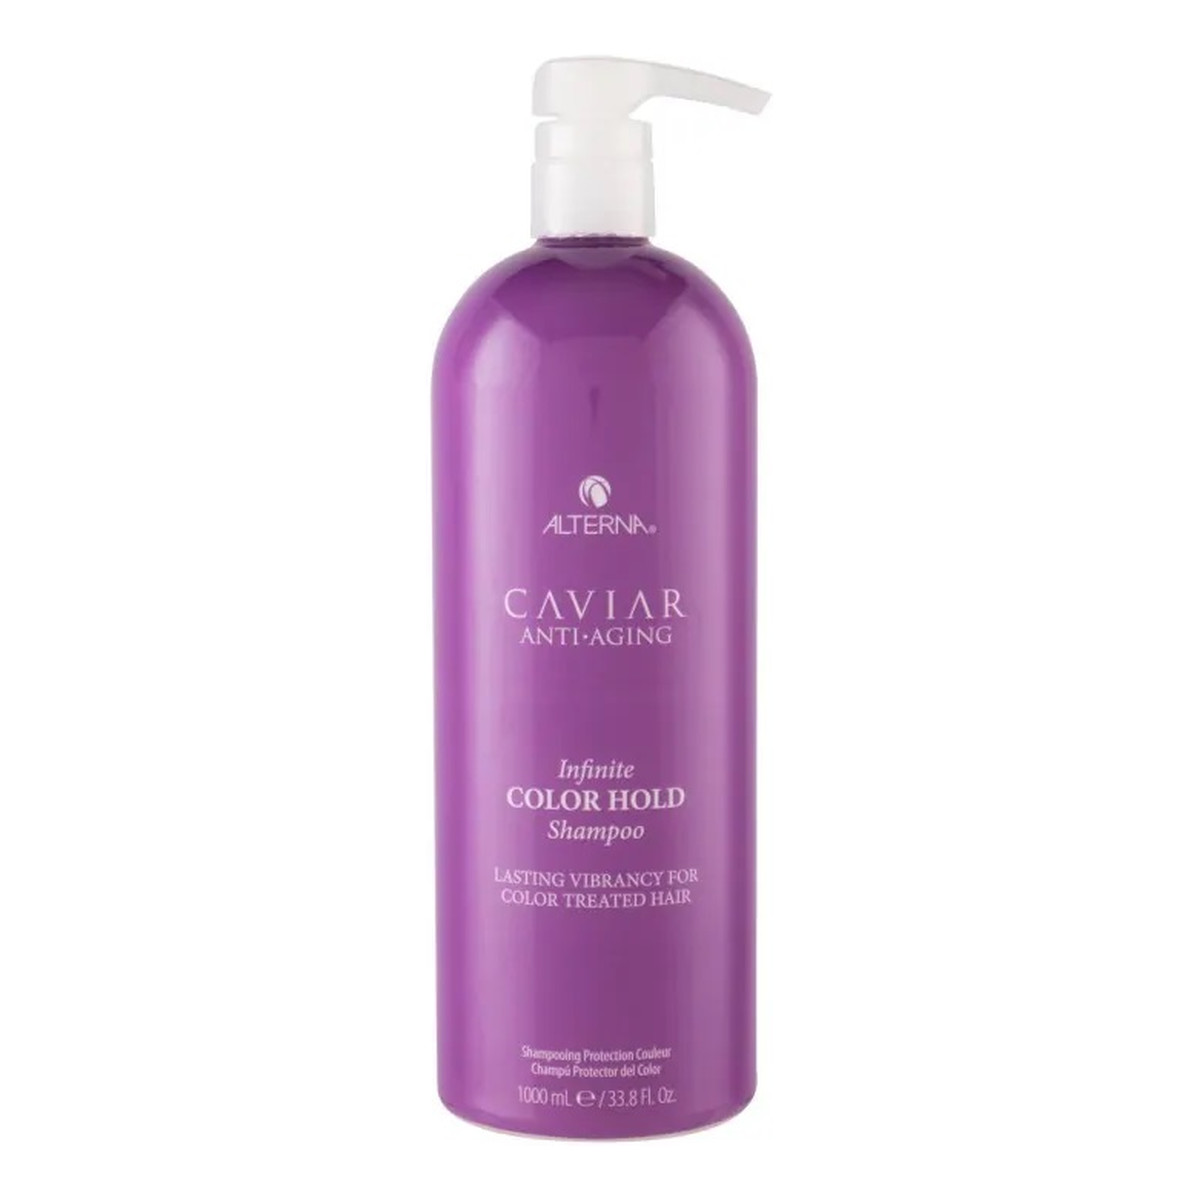 Alterna Caviar anti-aging infinite color hold shampoo szampon do włosów farbowanych 1000ml